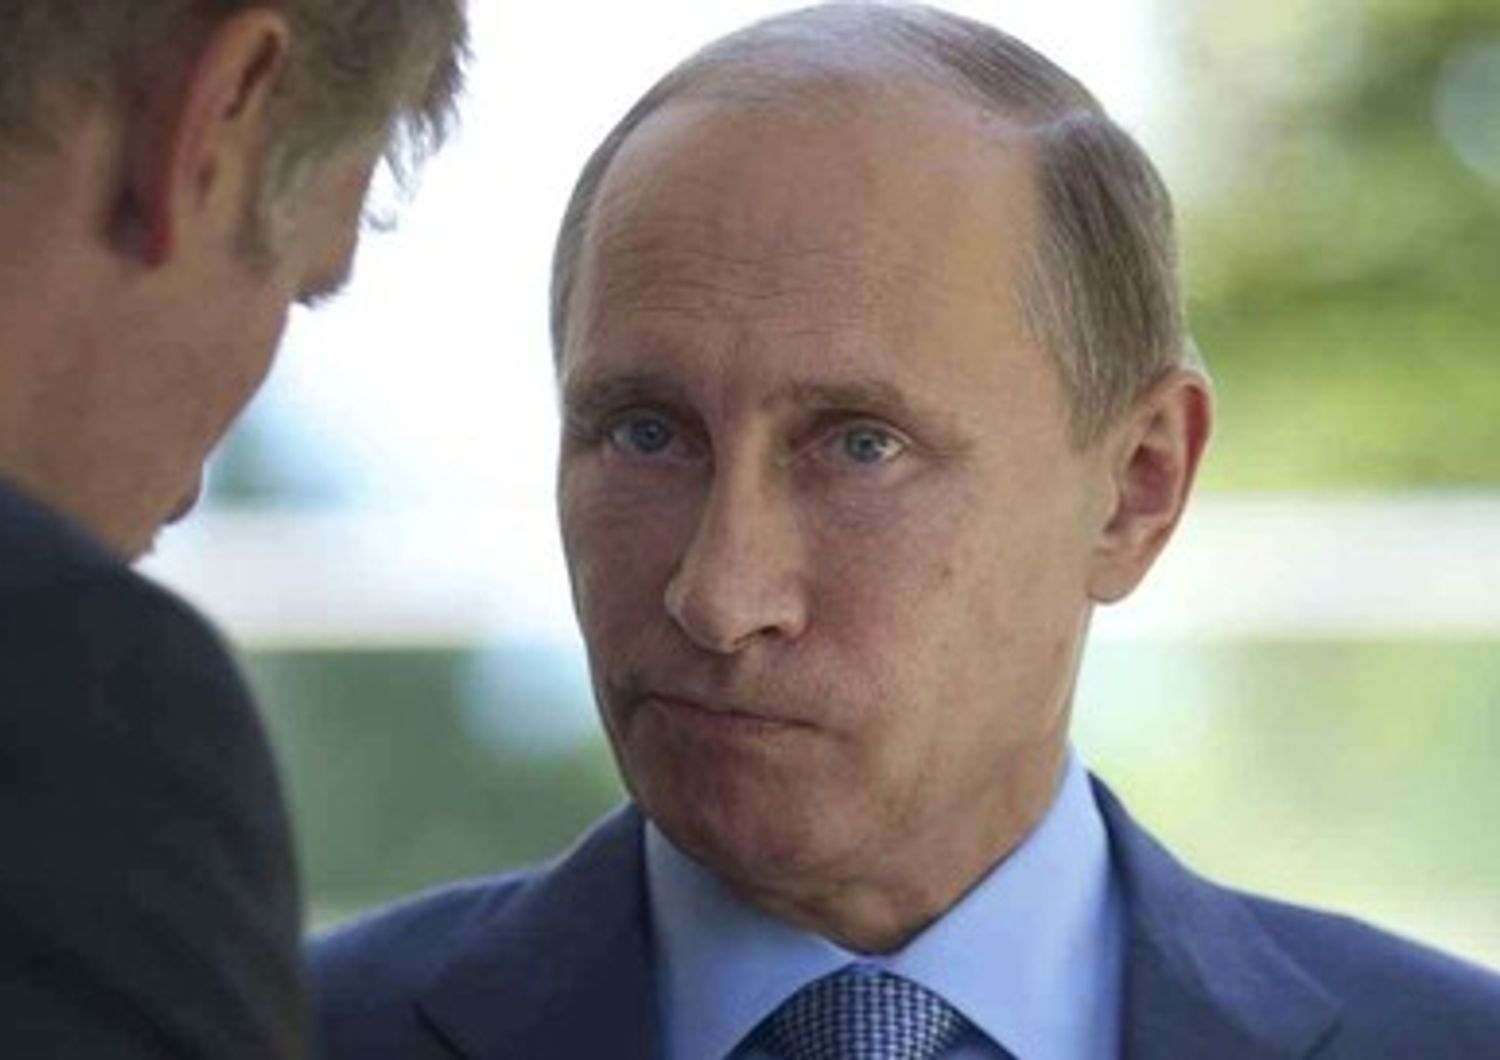 Putin minaccia, "se attaccati spegneremo internet"